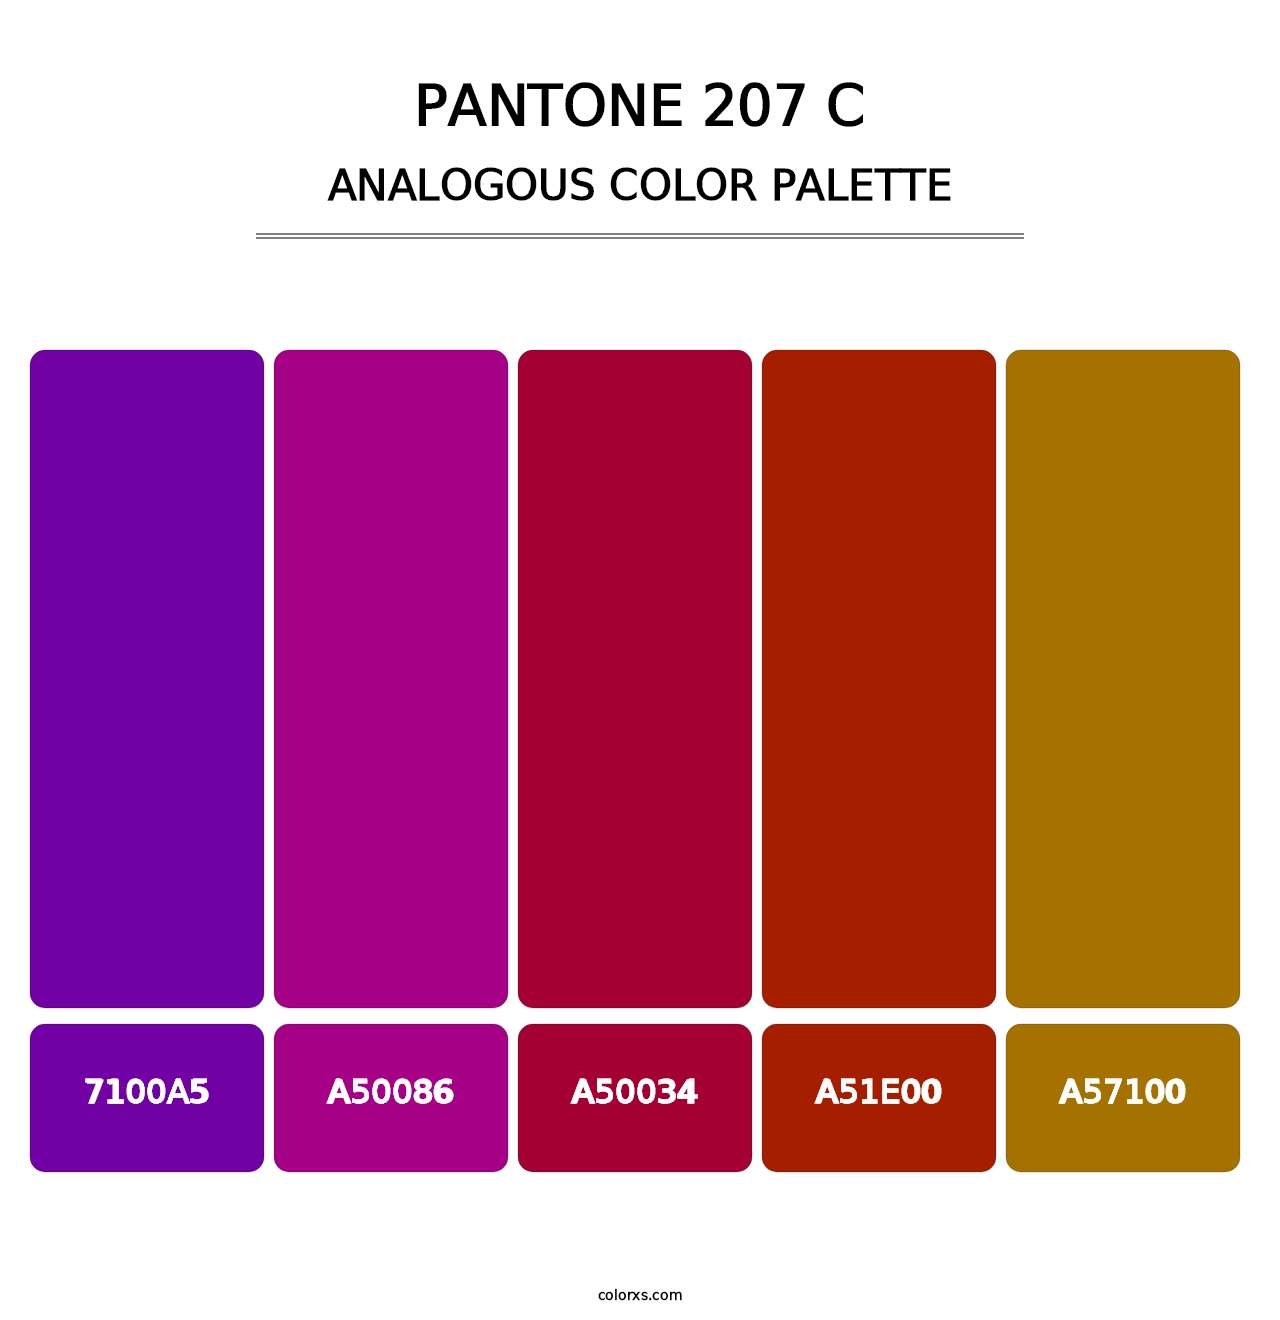 PANTONE 207 C - Analogous Color Palette